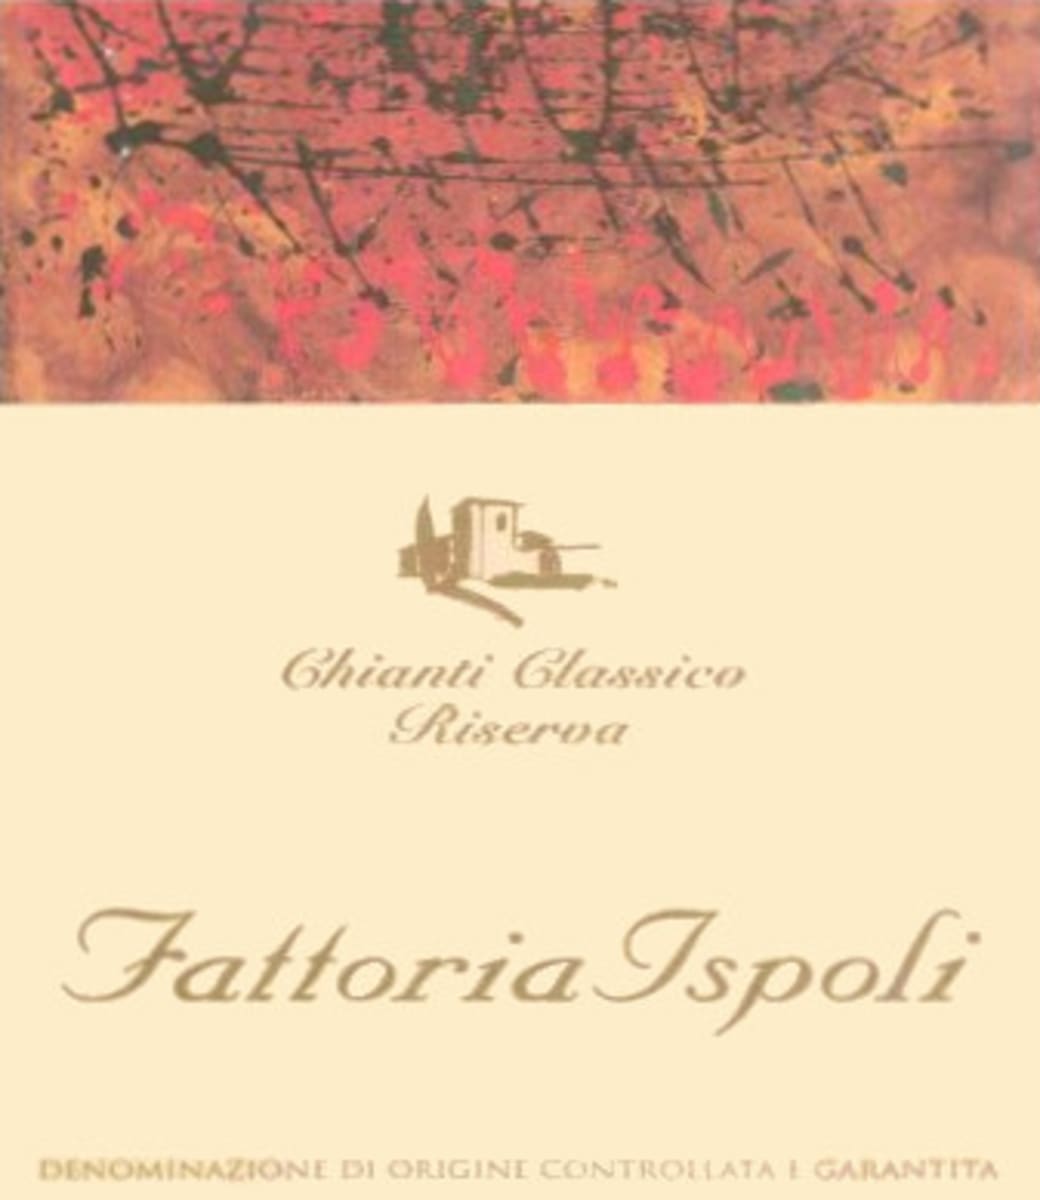 Fattoria Ispoli Chianti Classico Riserva 2008 Front Label